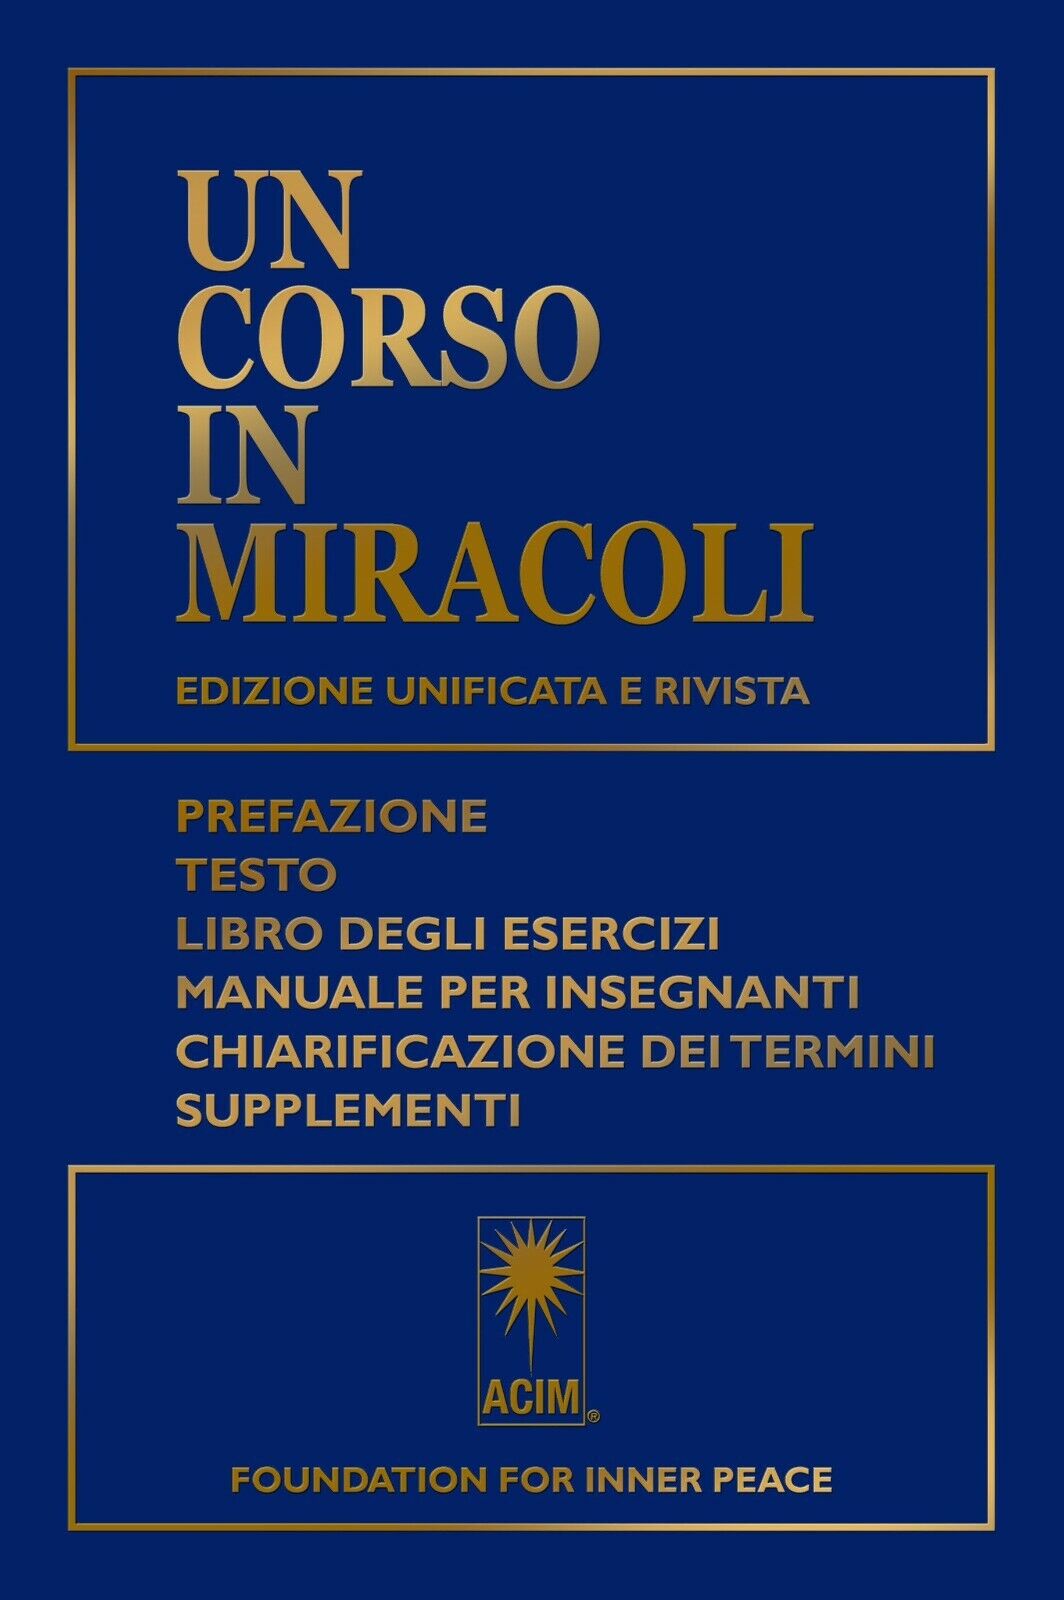 Un corso in miracoli di Aa.vv.,  2022,  Macro Edizioni